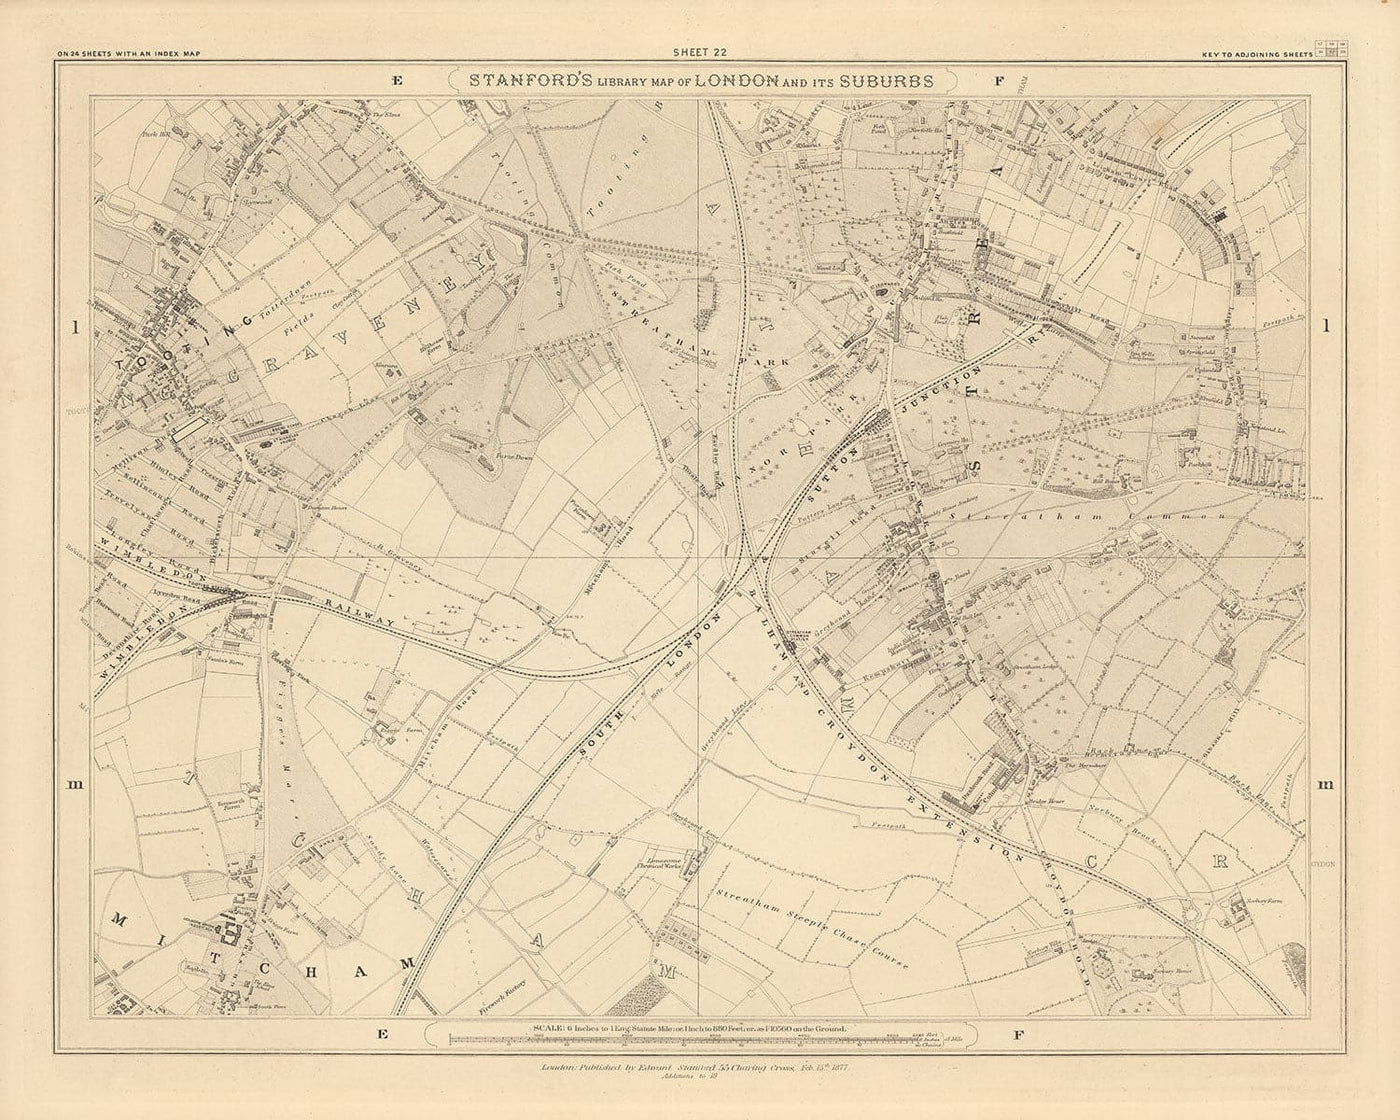 Alte Karte von South London 1862 von Edward Stanford - Stratham, Tooting, Mitcham, Norbury - SW17, SW16, CR4